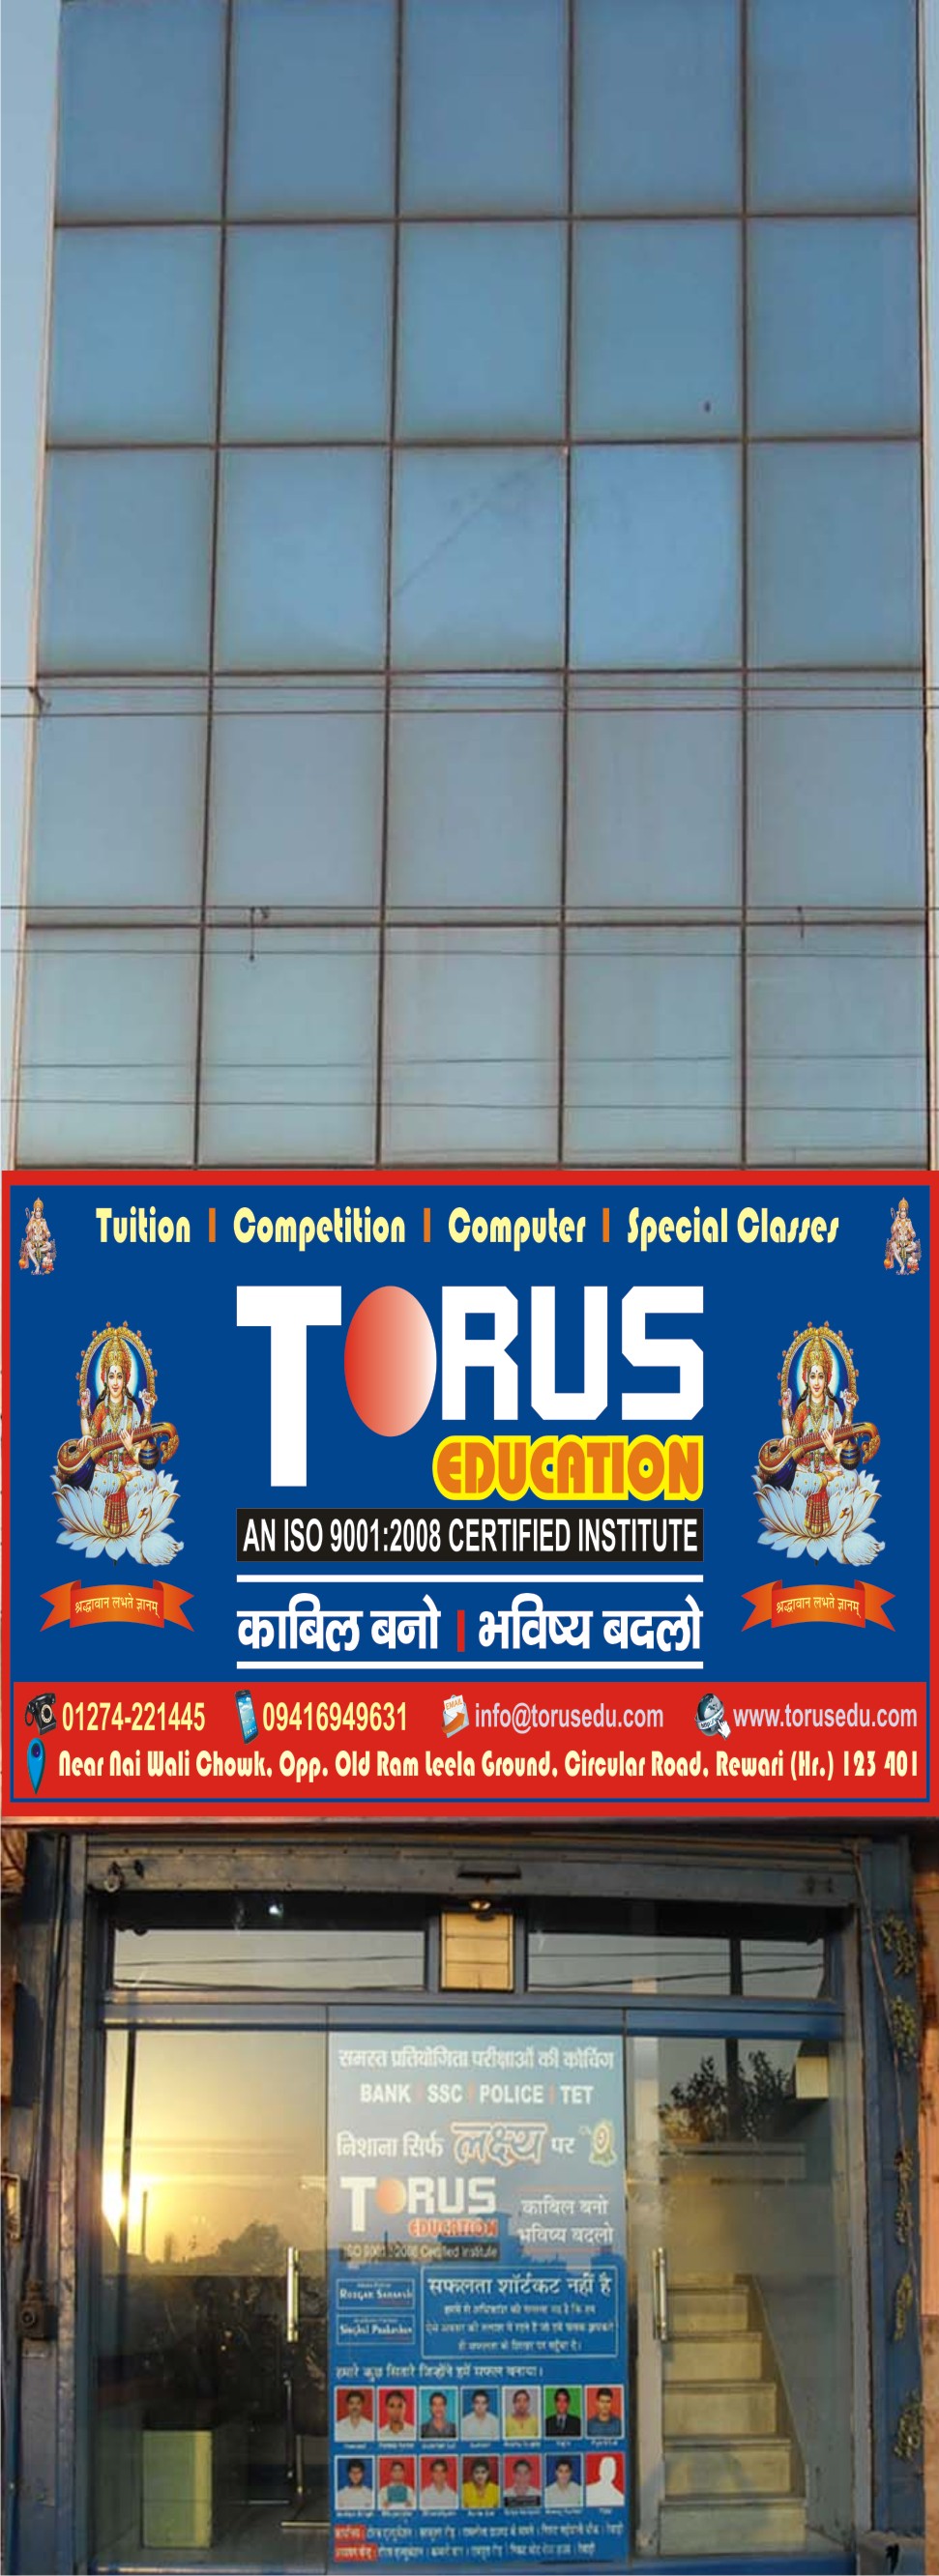 torus-logo-image